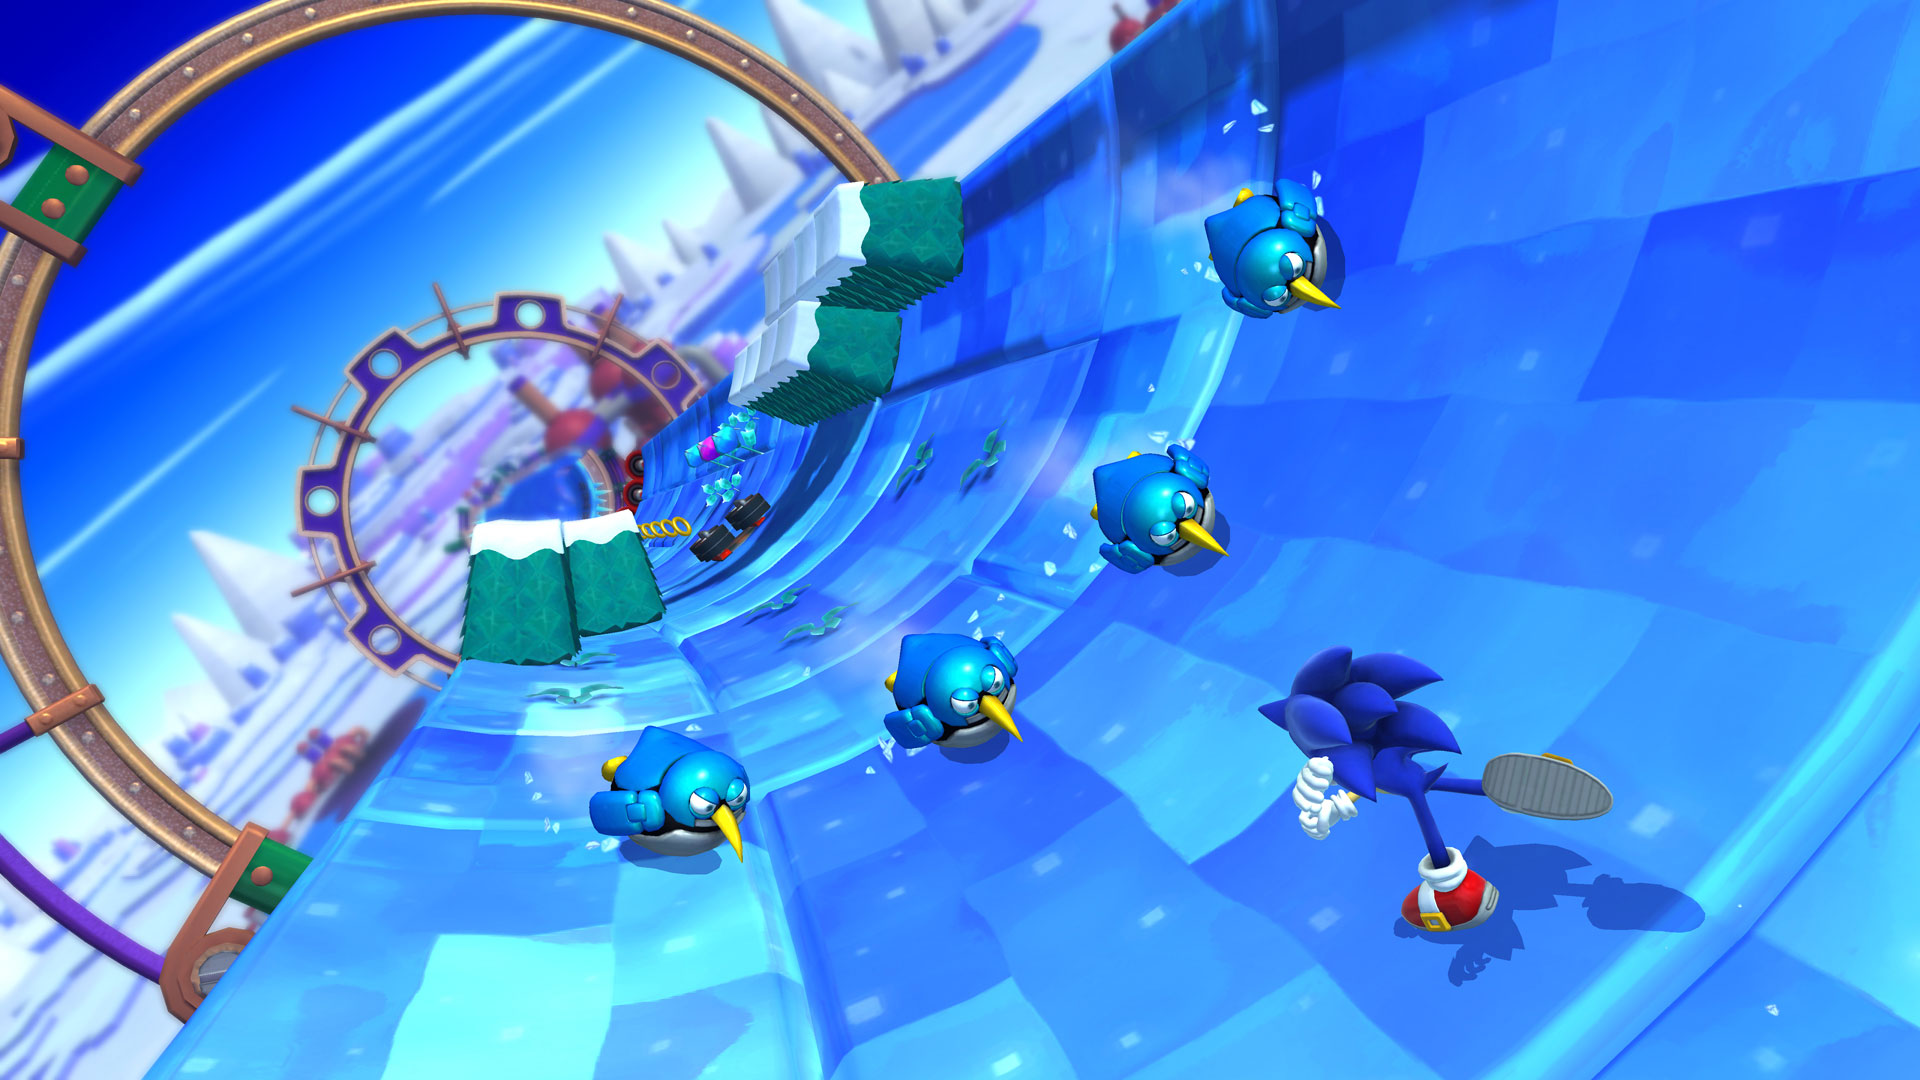 Sonic играть бесплатно онлайн игры